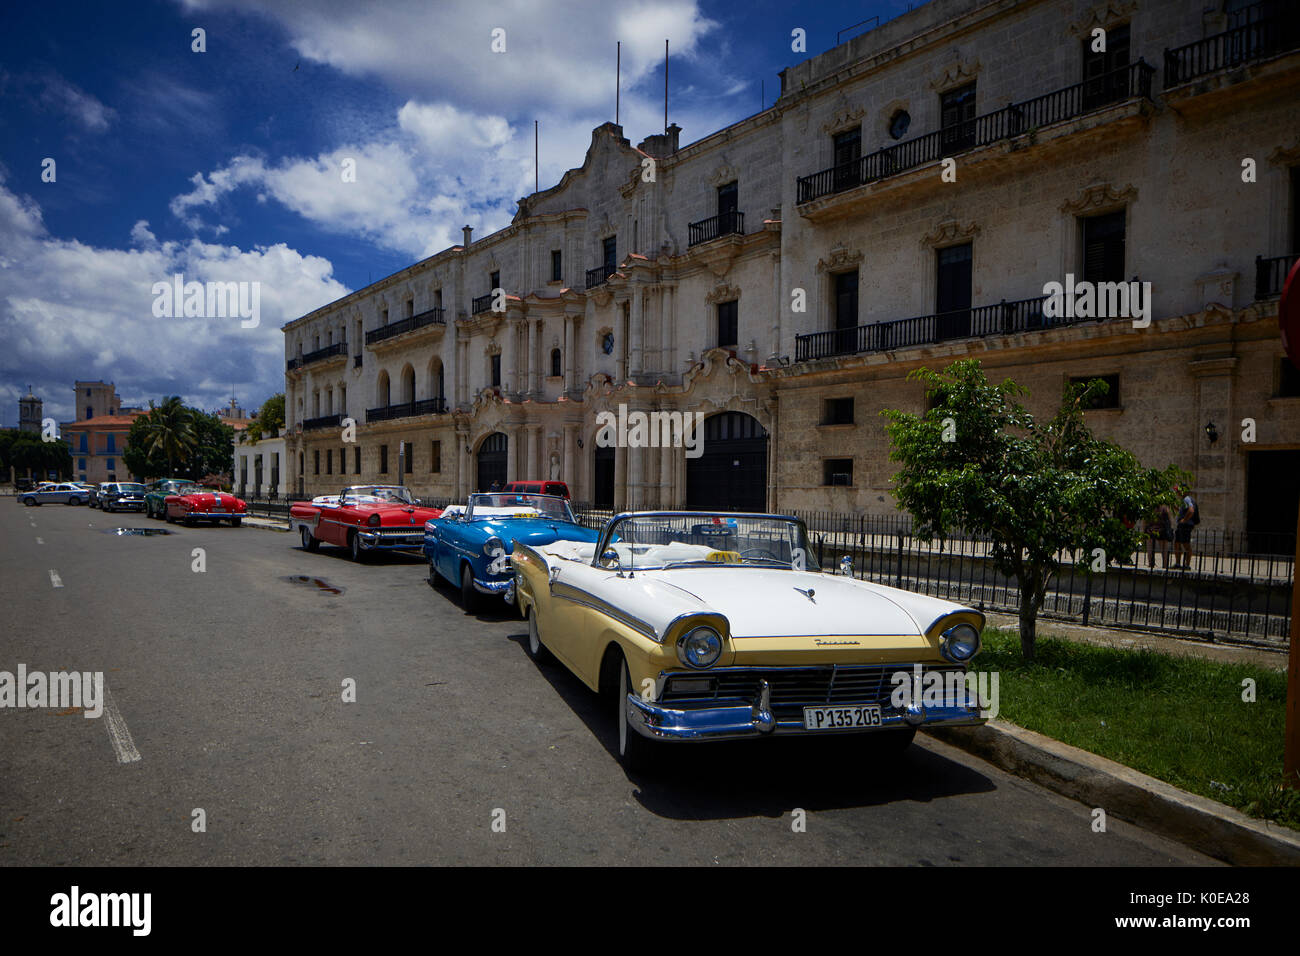 Le cubain, Cuba, La Havane, capitale de l'Amérique classique de voitures stationnées à Parque Luz Caballero sur Cuba Tacon parking Banque D'Images